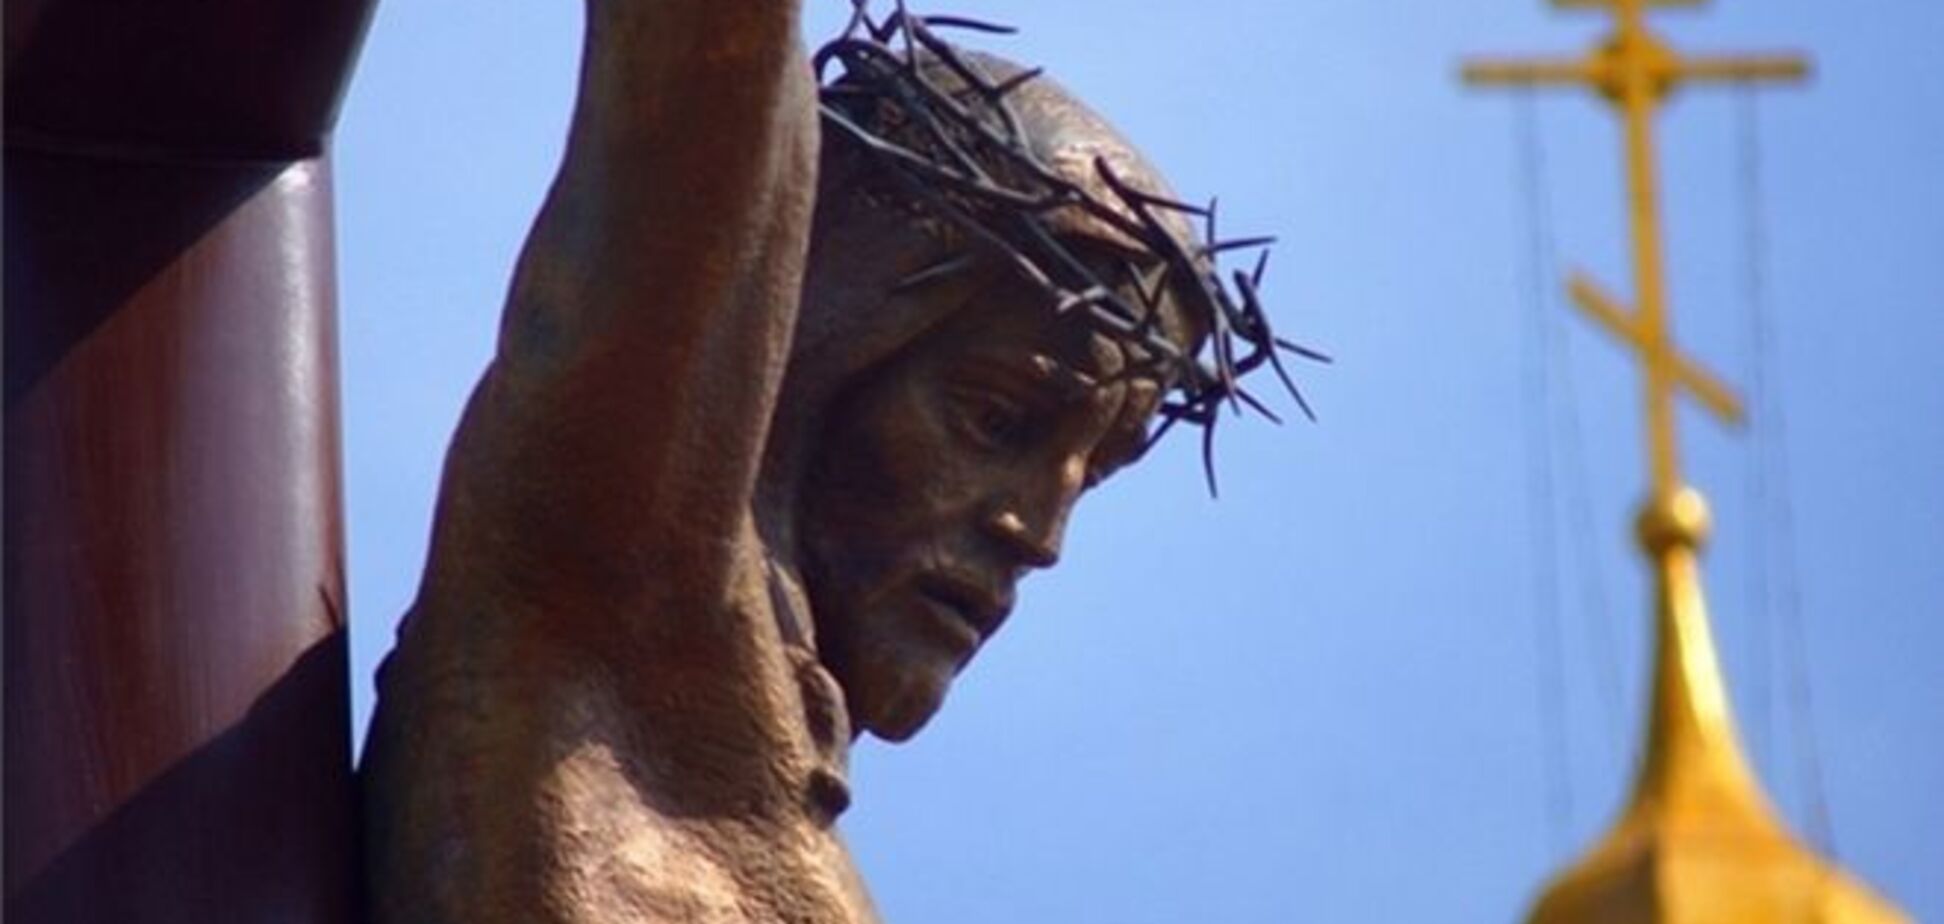 В Днепродзержинске открыли самую большую в Украине статую Христа Спасителя